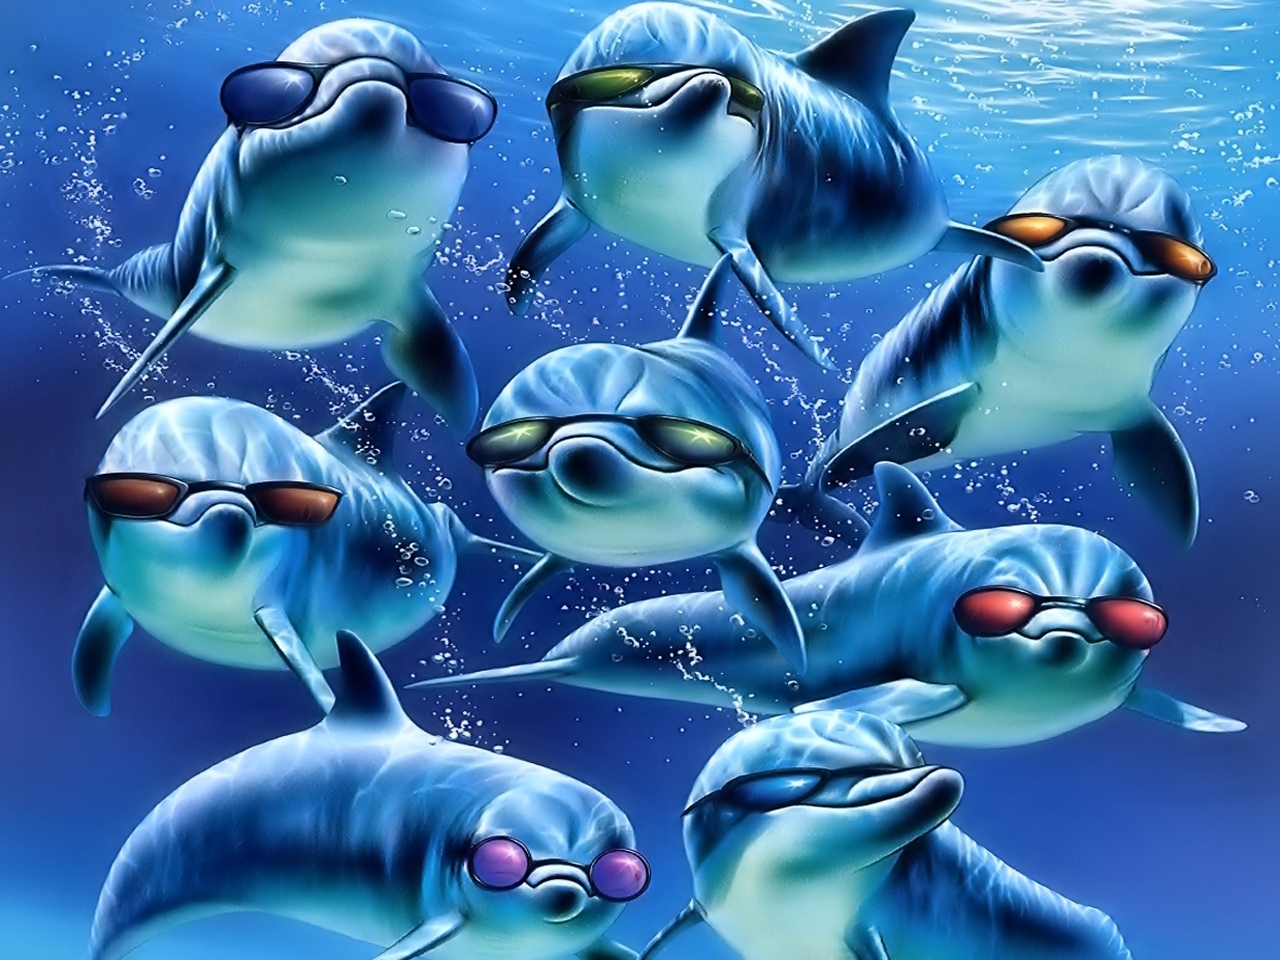 Juegos De Cine - Dolphins Wallpaper Desktop - HD Wallpaper 